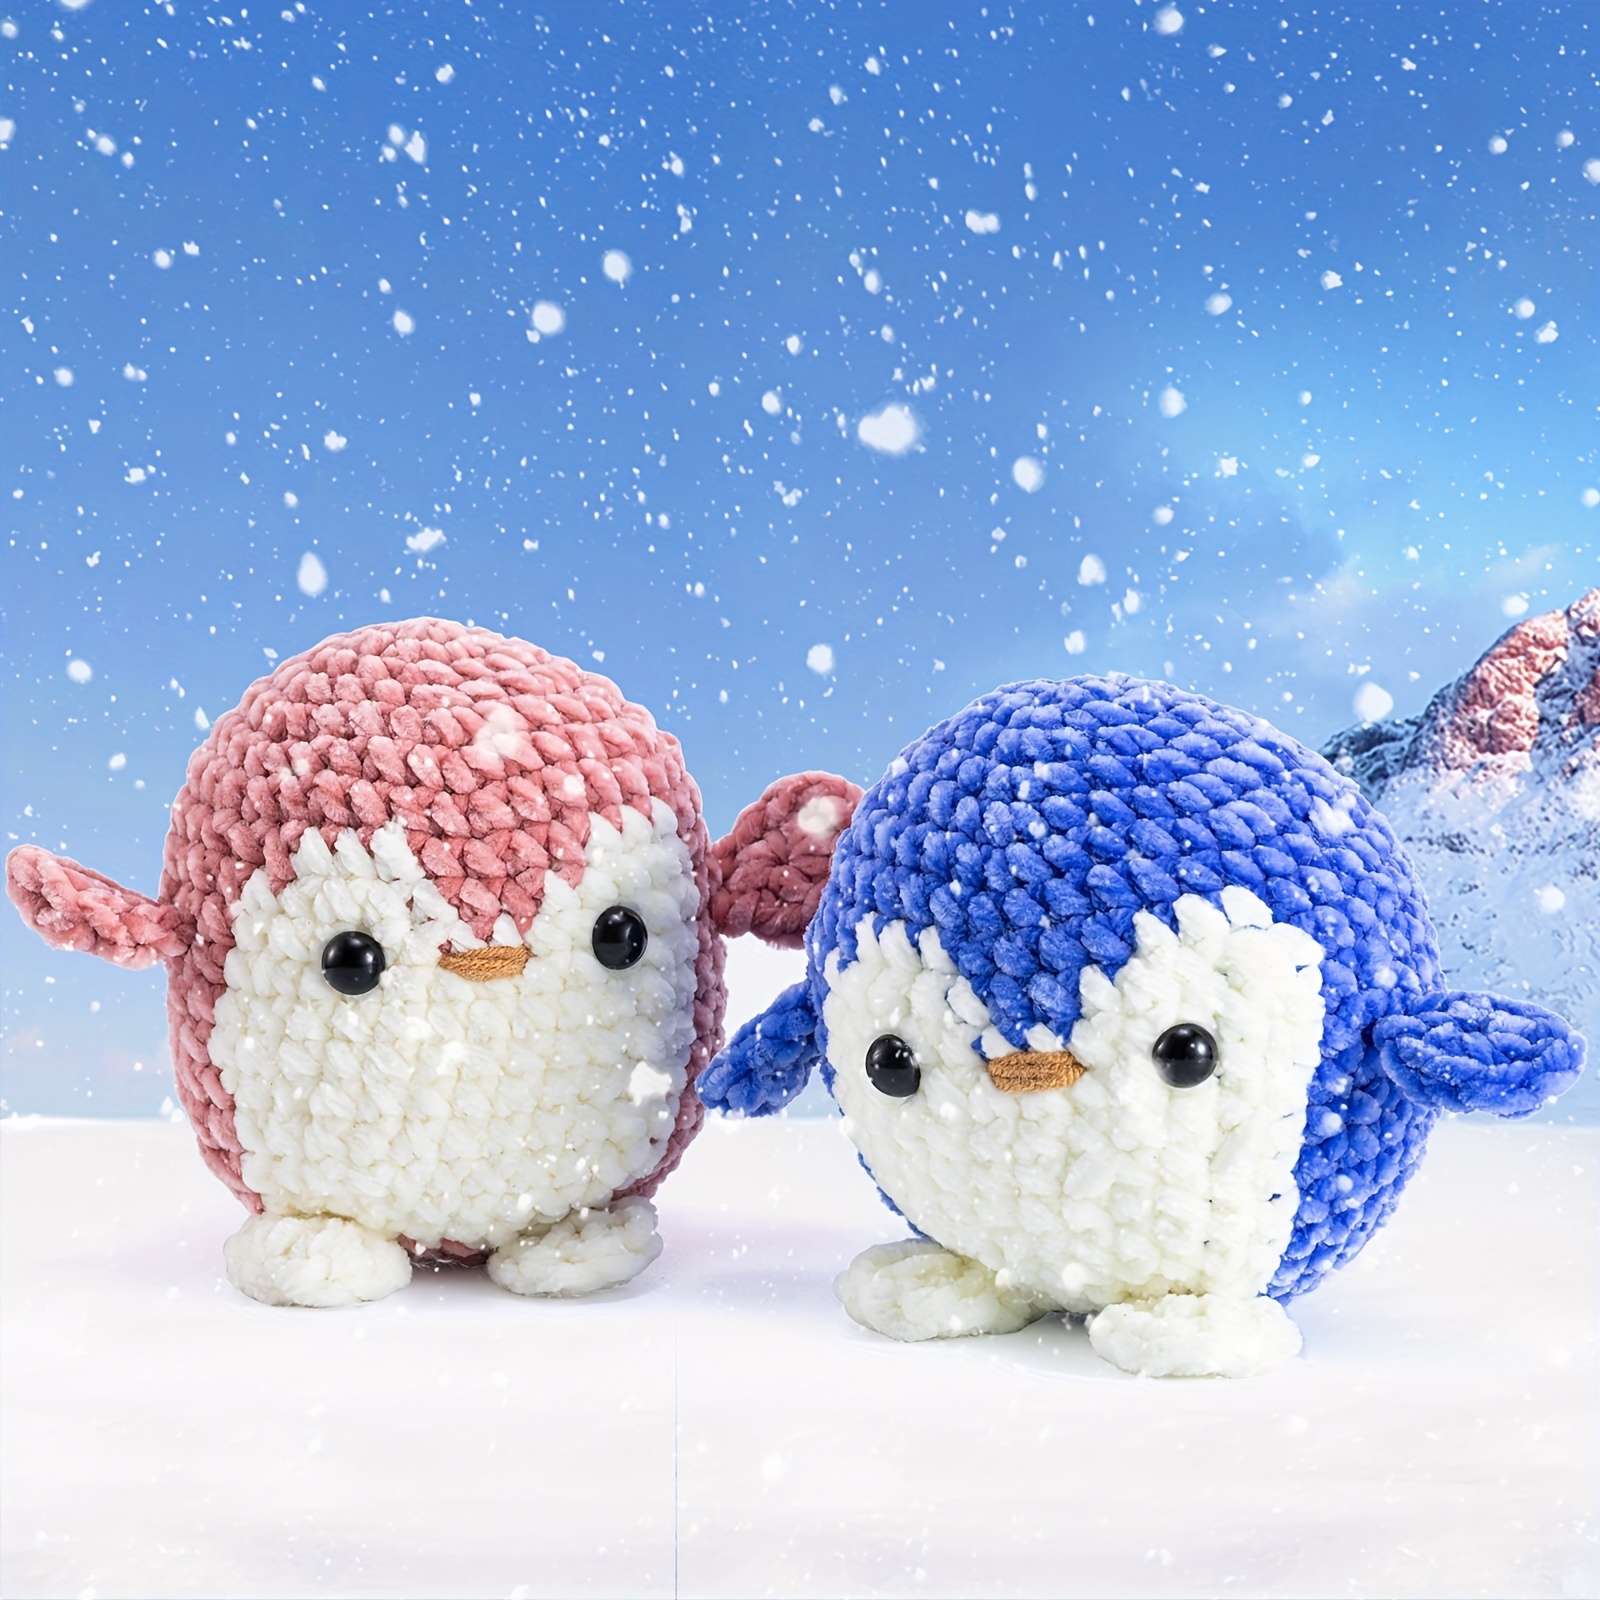 Kit De Crochet De Pingüino Para Principiantes Que Pueden Hacer 2 Pingüinos,  Kit De Inicio De Crochet De Animal Todo En Y Completo Para Aprender Crochet  Con Instrucciones Y Tutoriales En Video